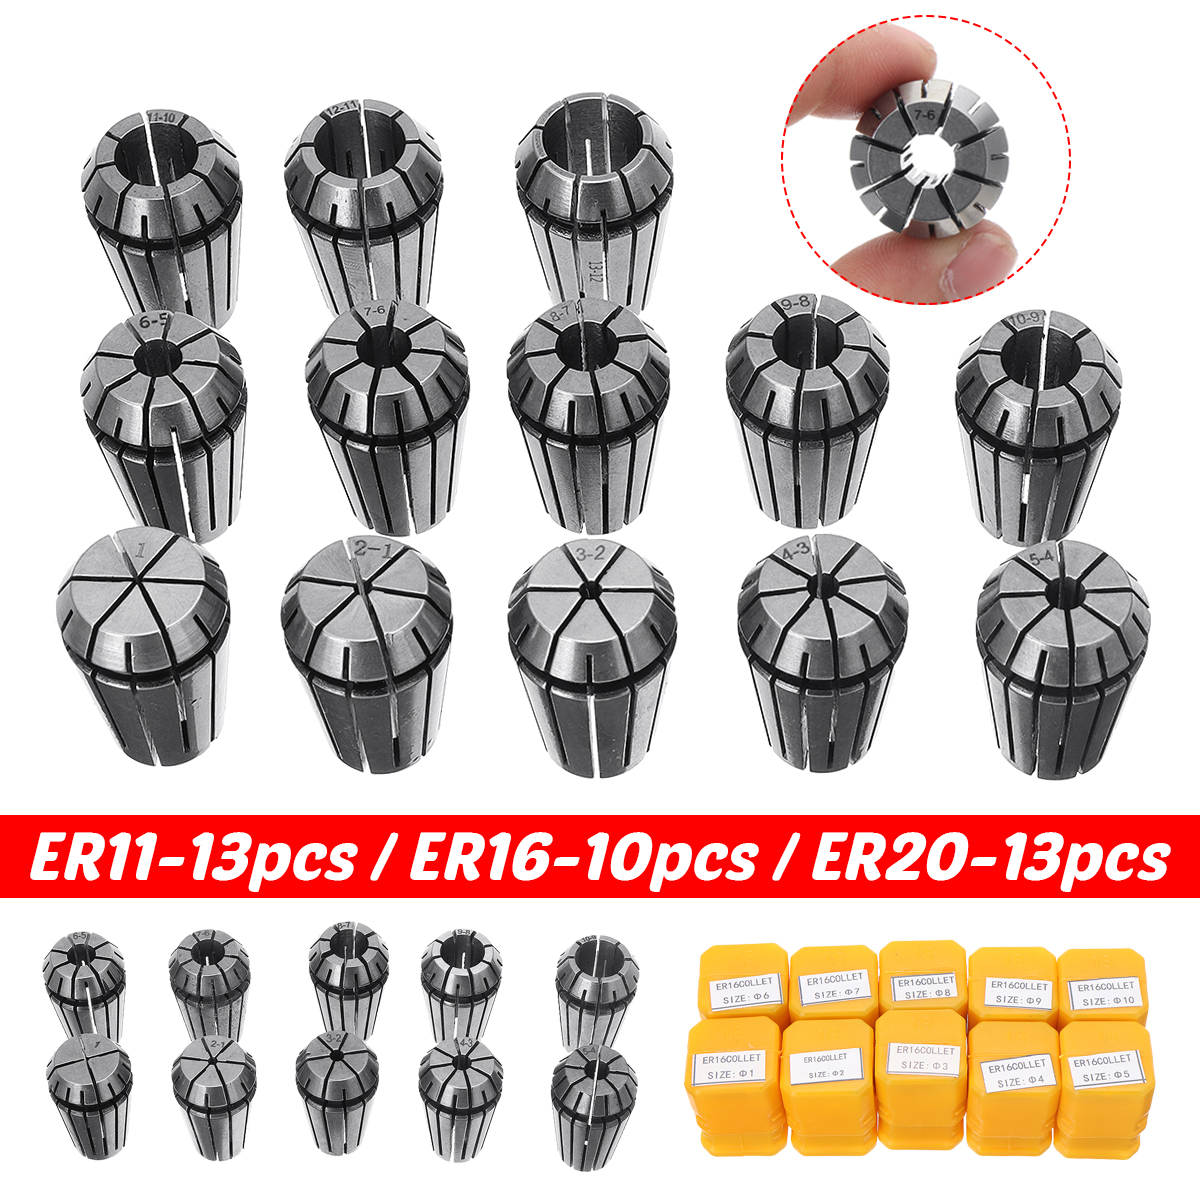 ER11-ER16-ER20-Spring-Collet-Chuck-Set--CNC-Milling-Lathe-Tool-for-Engraving-Machine-1724168-1